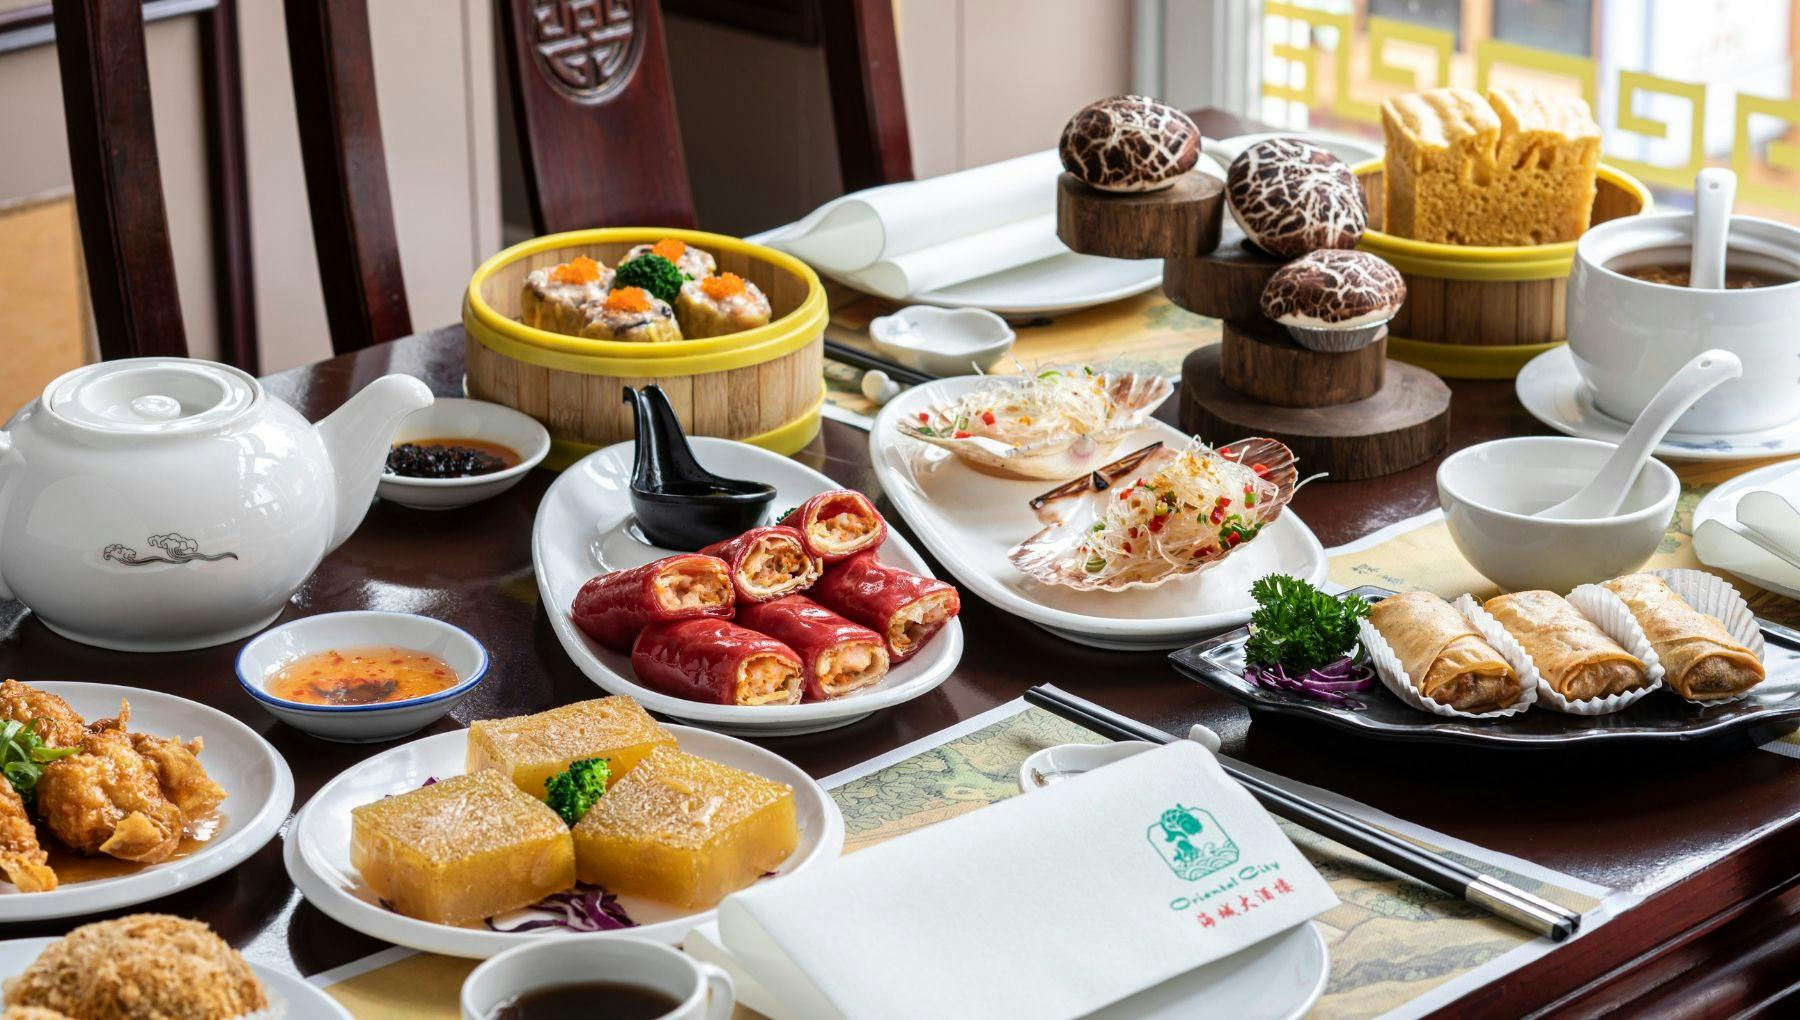 Oriental City restaurant signature dishes